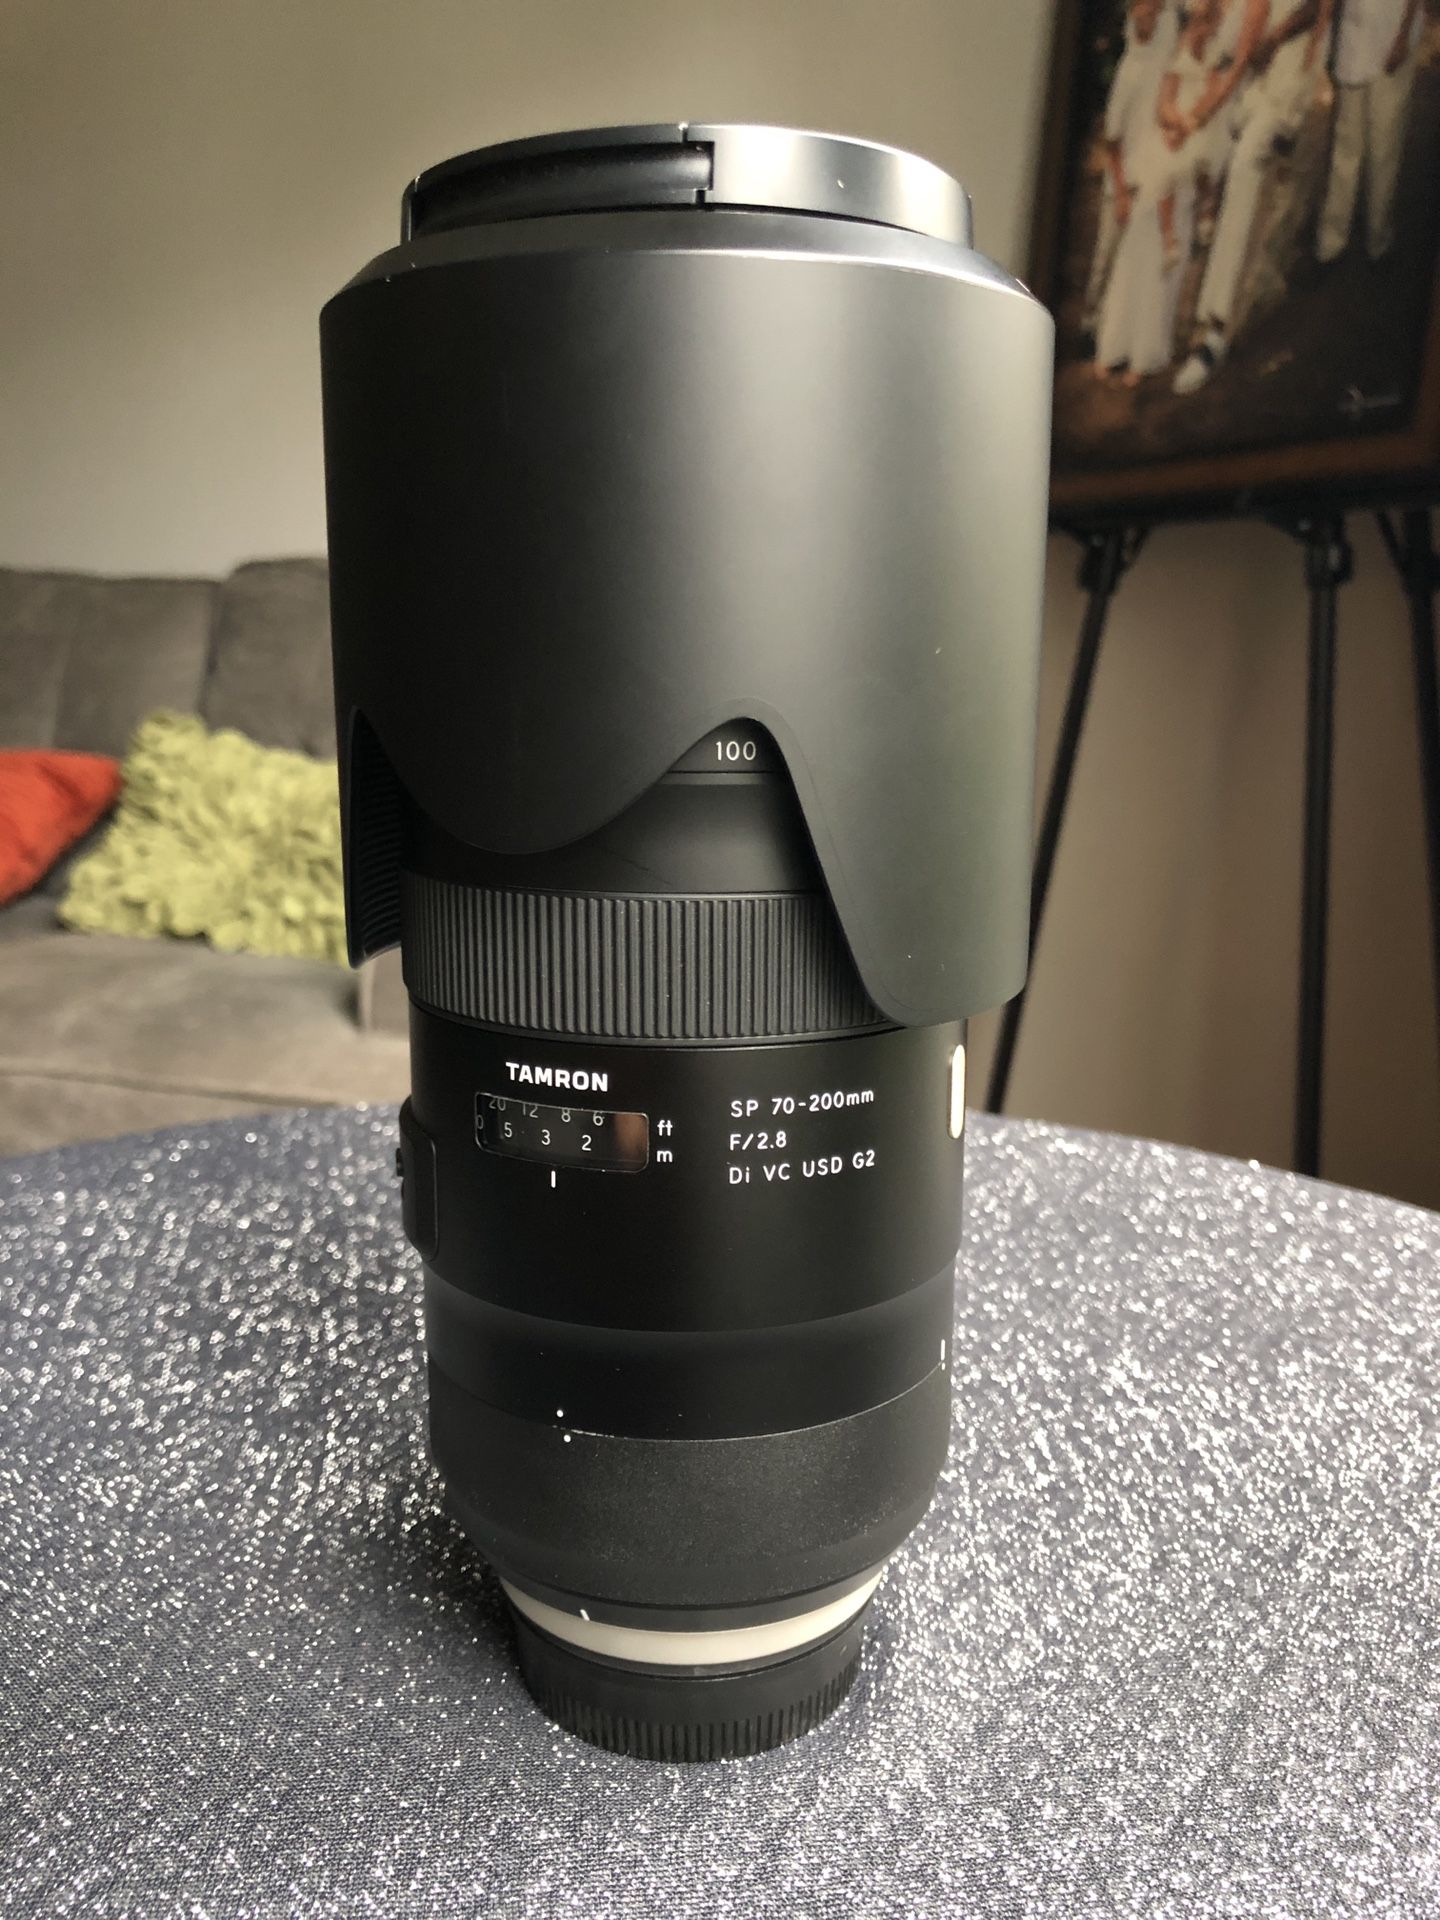 Nikon Tamron 70-200mm f2.8 G2 telephoto lens. NIkon F mount.